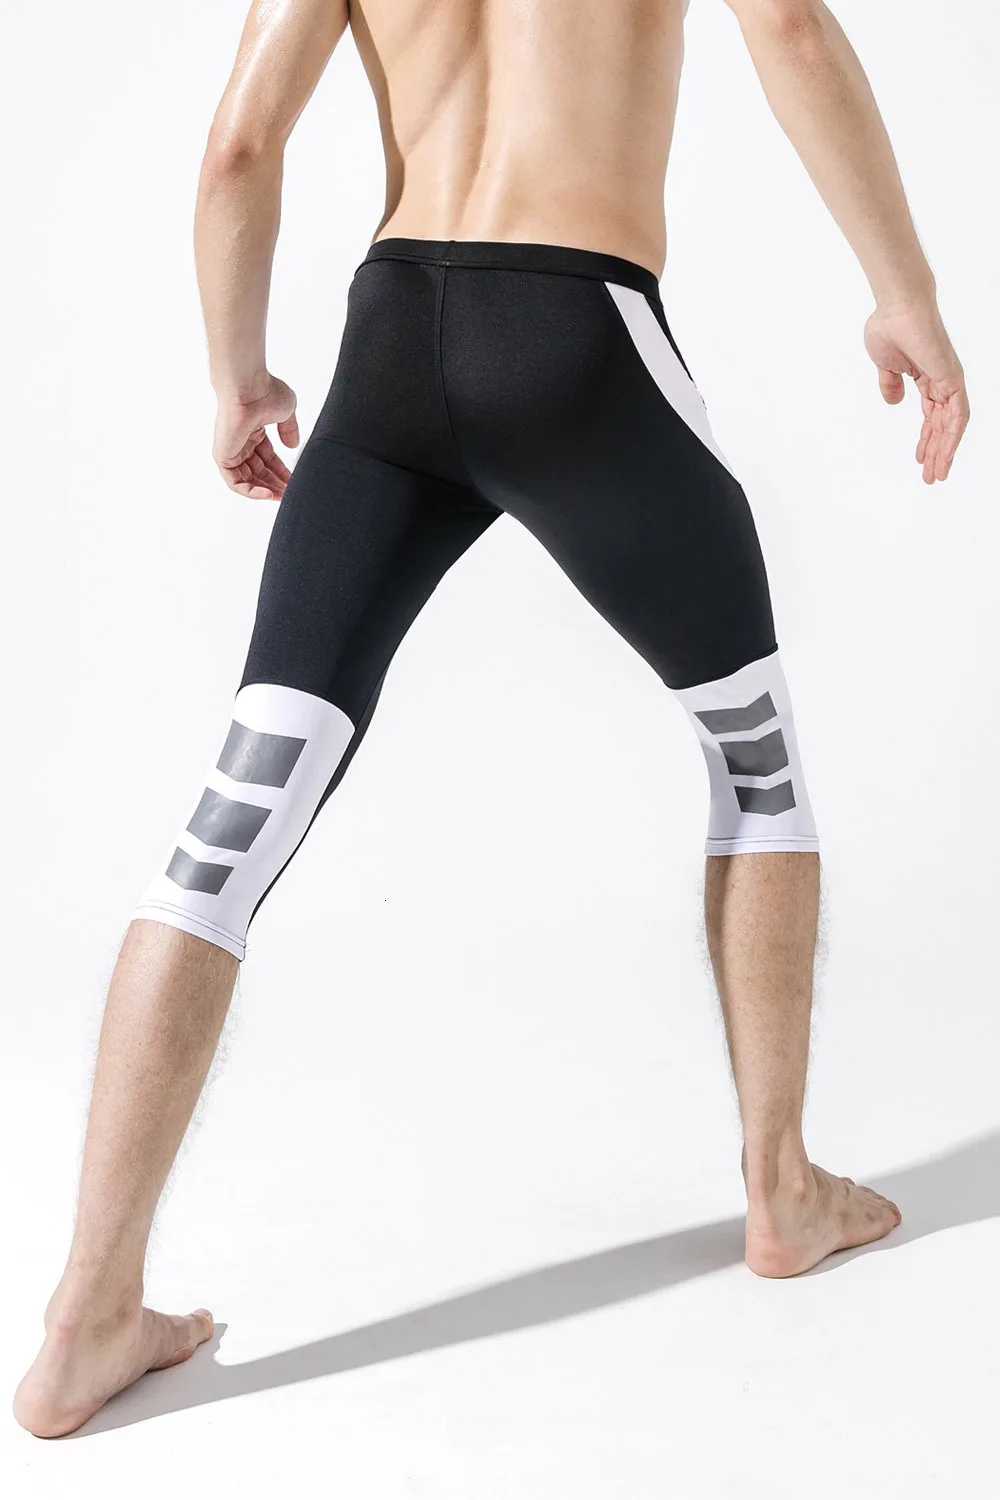 Мужские Бодибилдинг легинсы для тренировок быстросохнущие шорты обтягивающие спортивные штаны для бега Фитнес Спортивная одежда тренировочные леггинсы для фитнеса компрессионные штаны